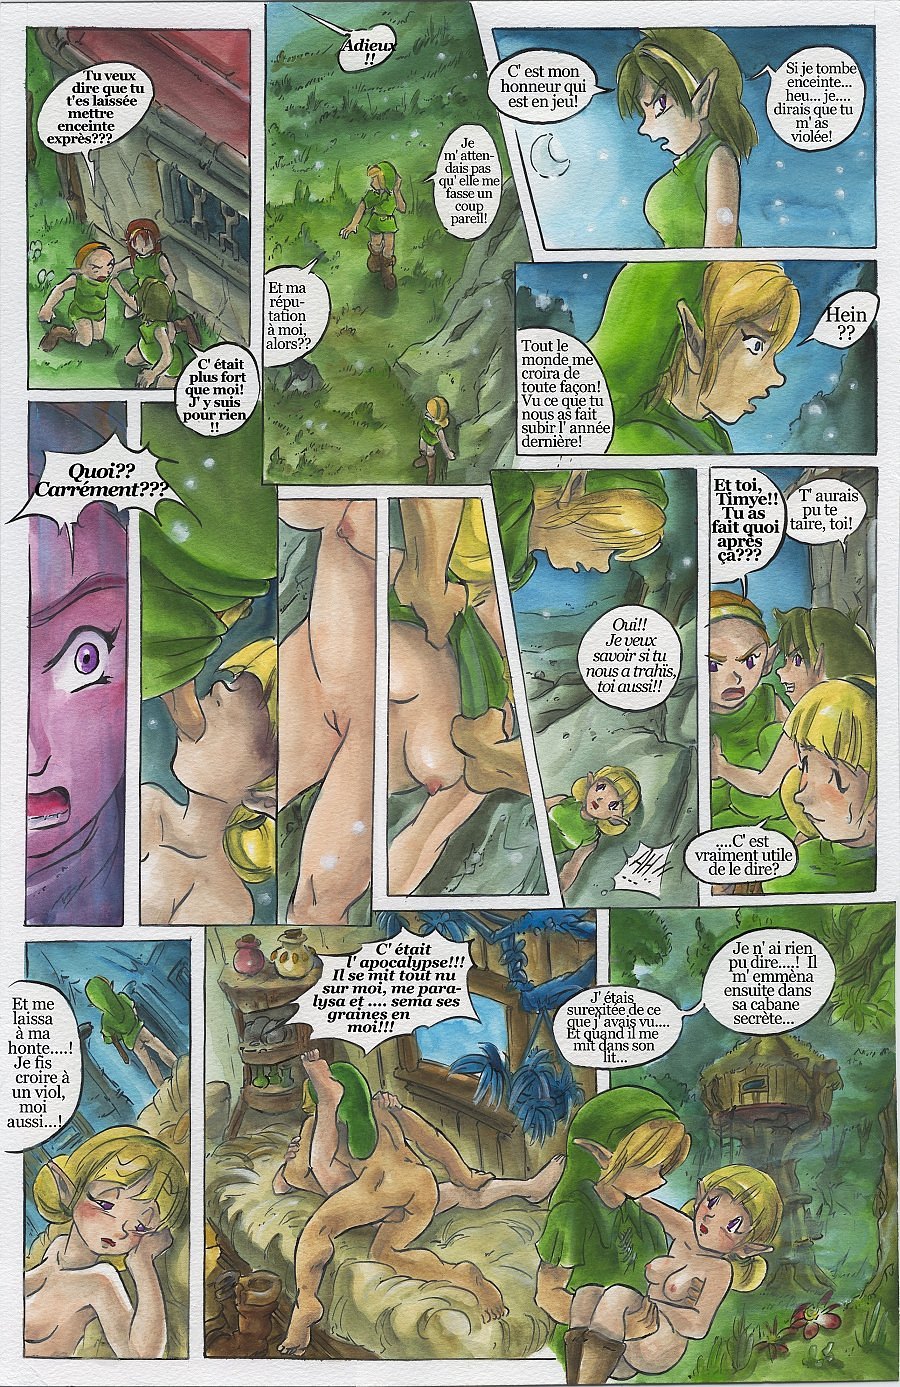 Bad Zelda 2 (The Legend of Zelda) [5] [VF]